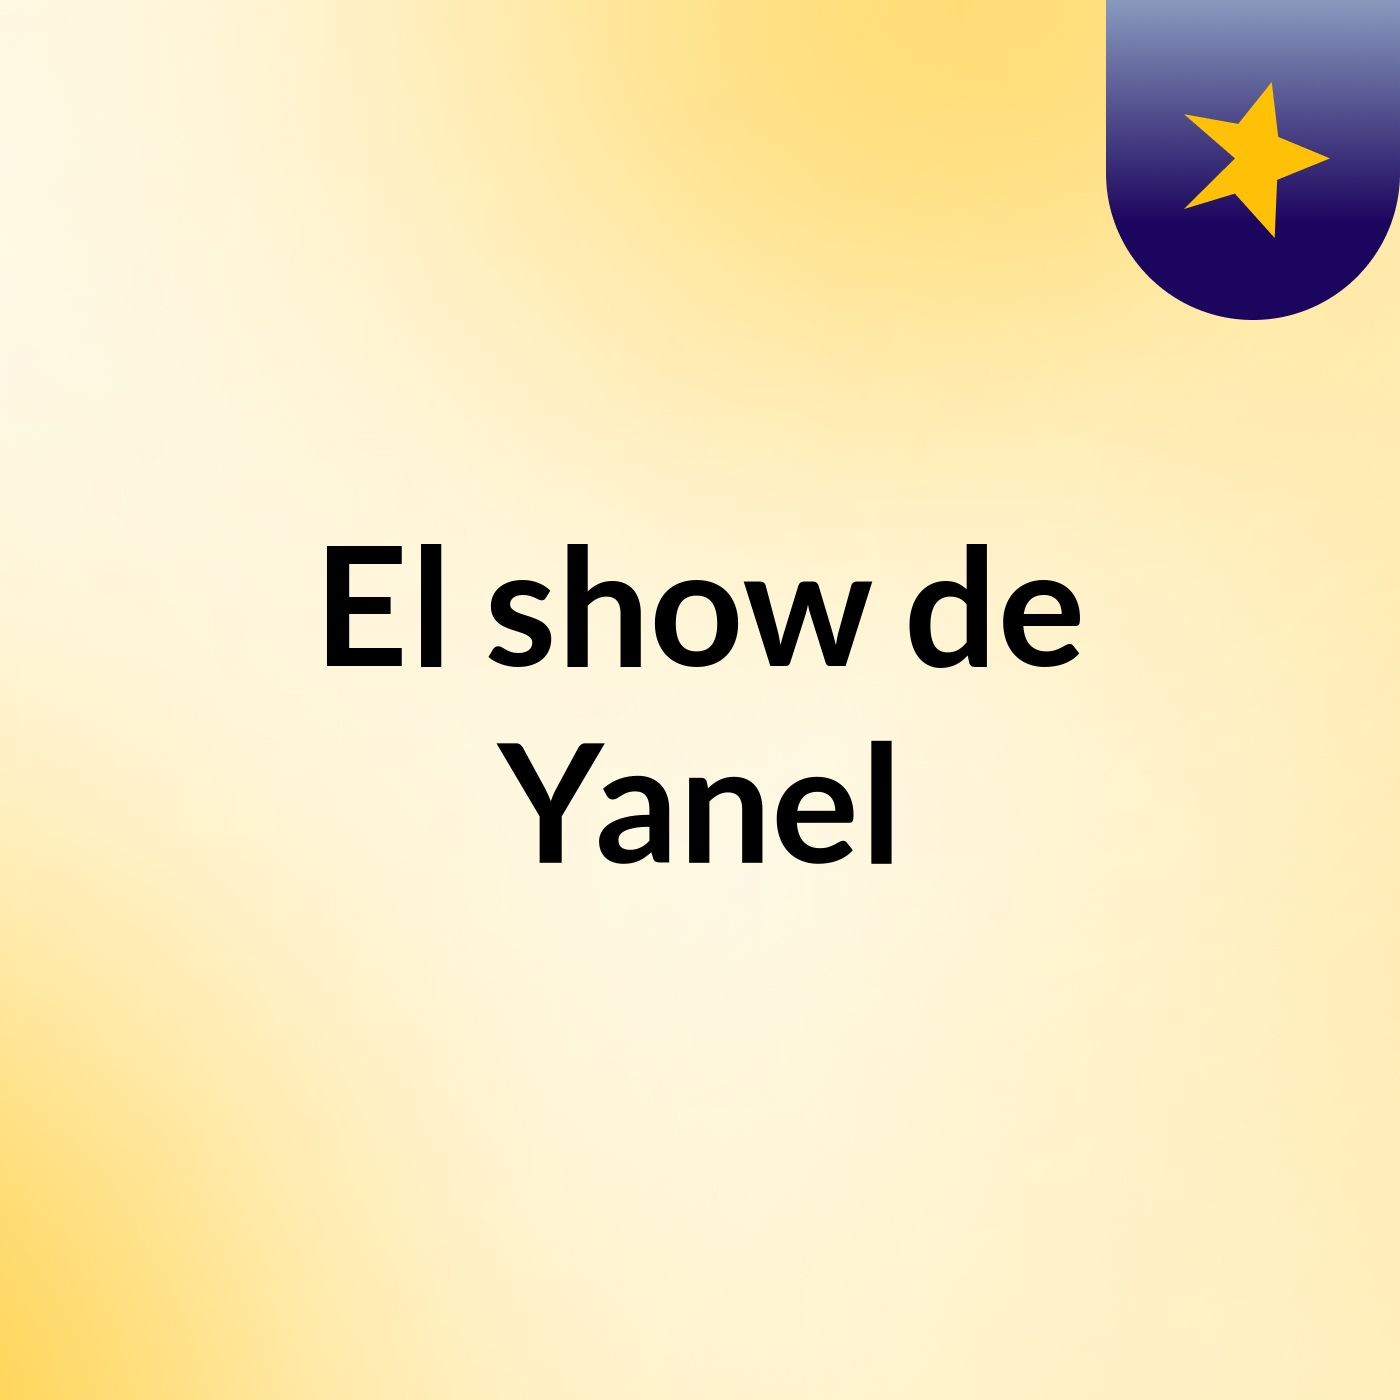 Episodio 2 - El show de Yanel